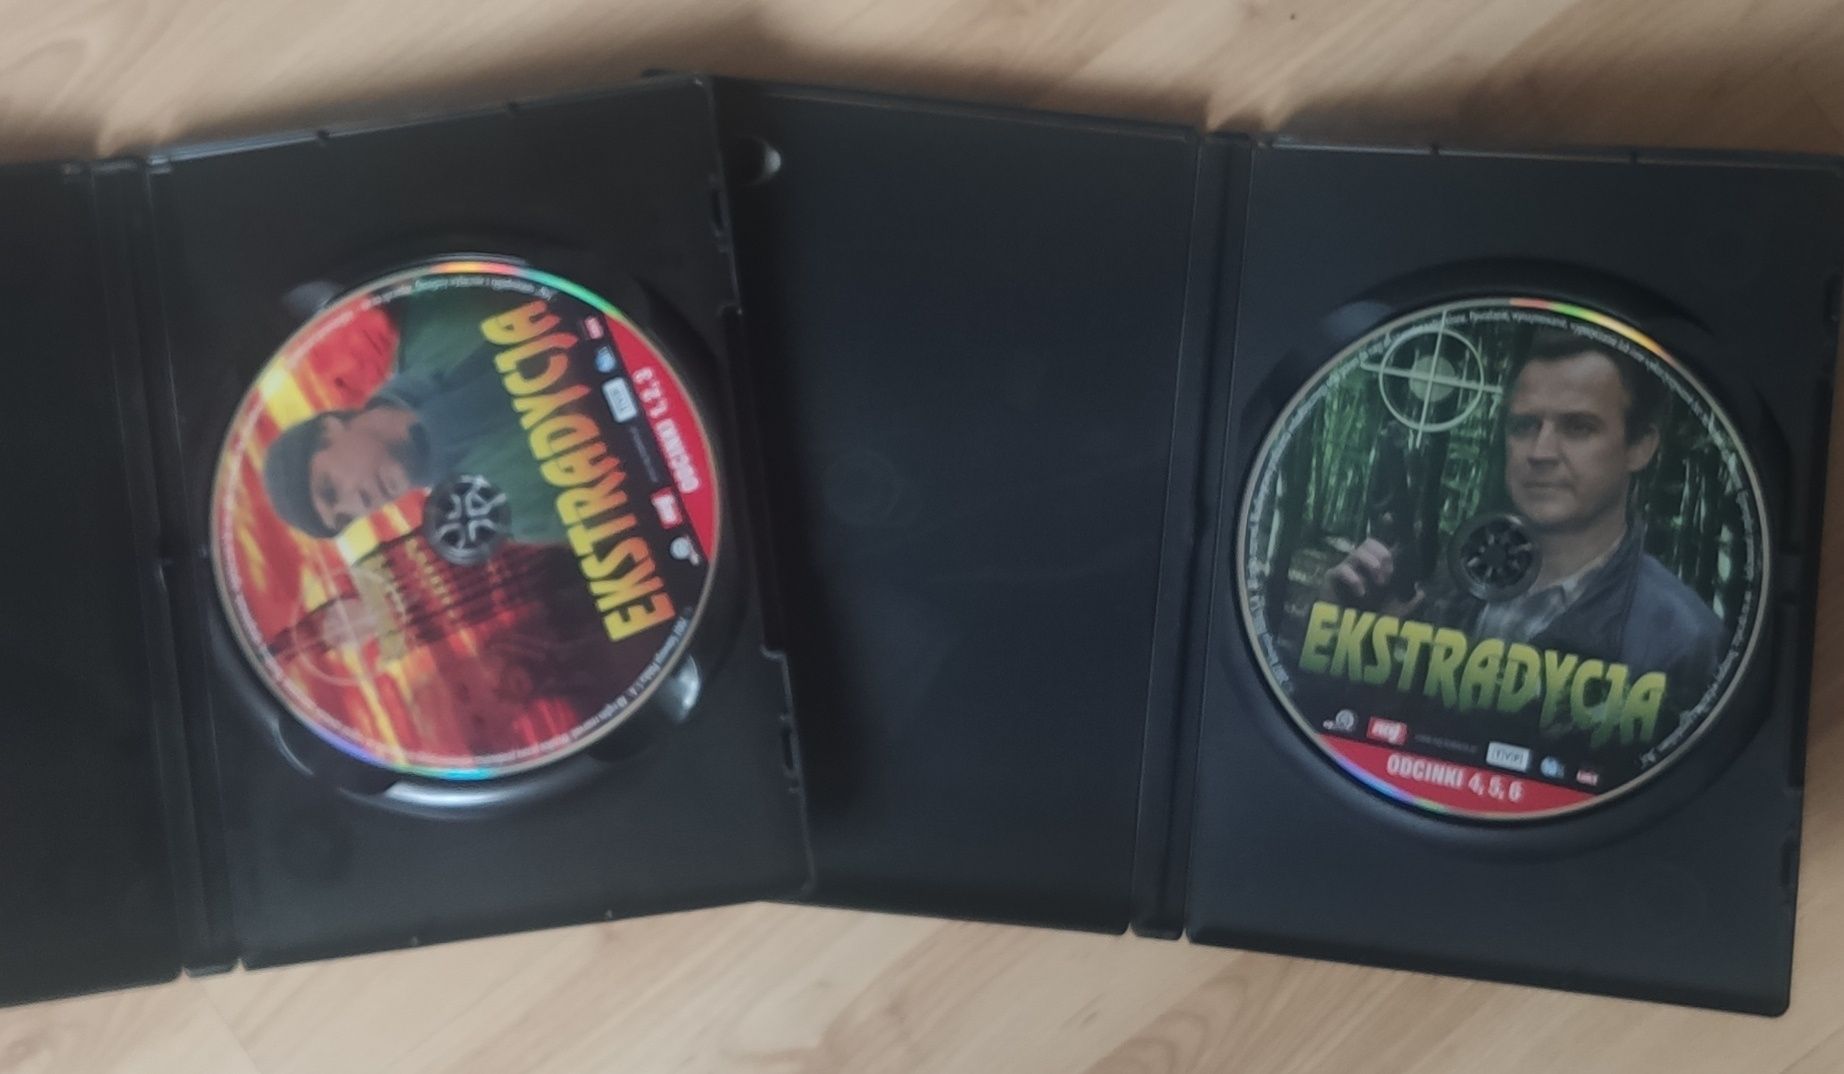 Film Ekstradycja CD / DVD 1 cz. I 2 cz. ZESTAW